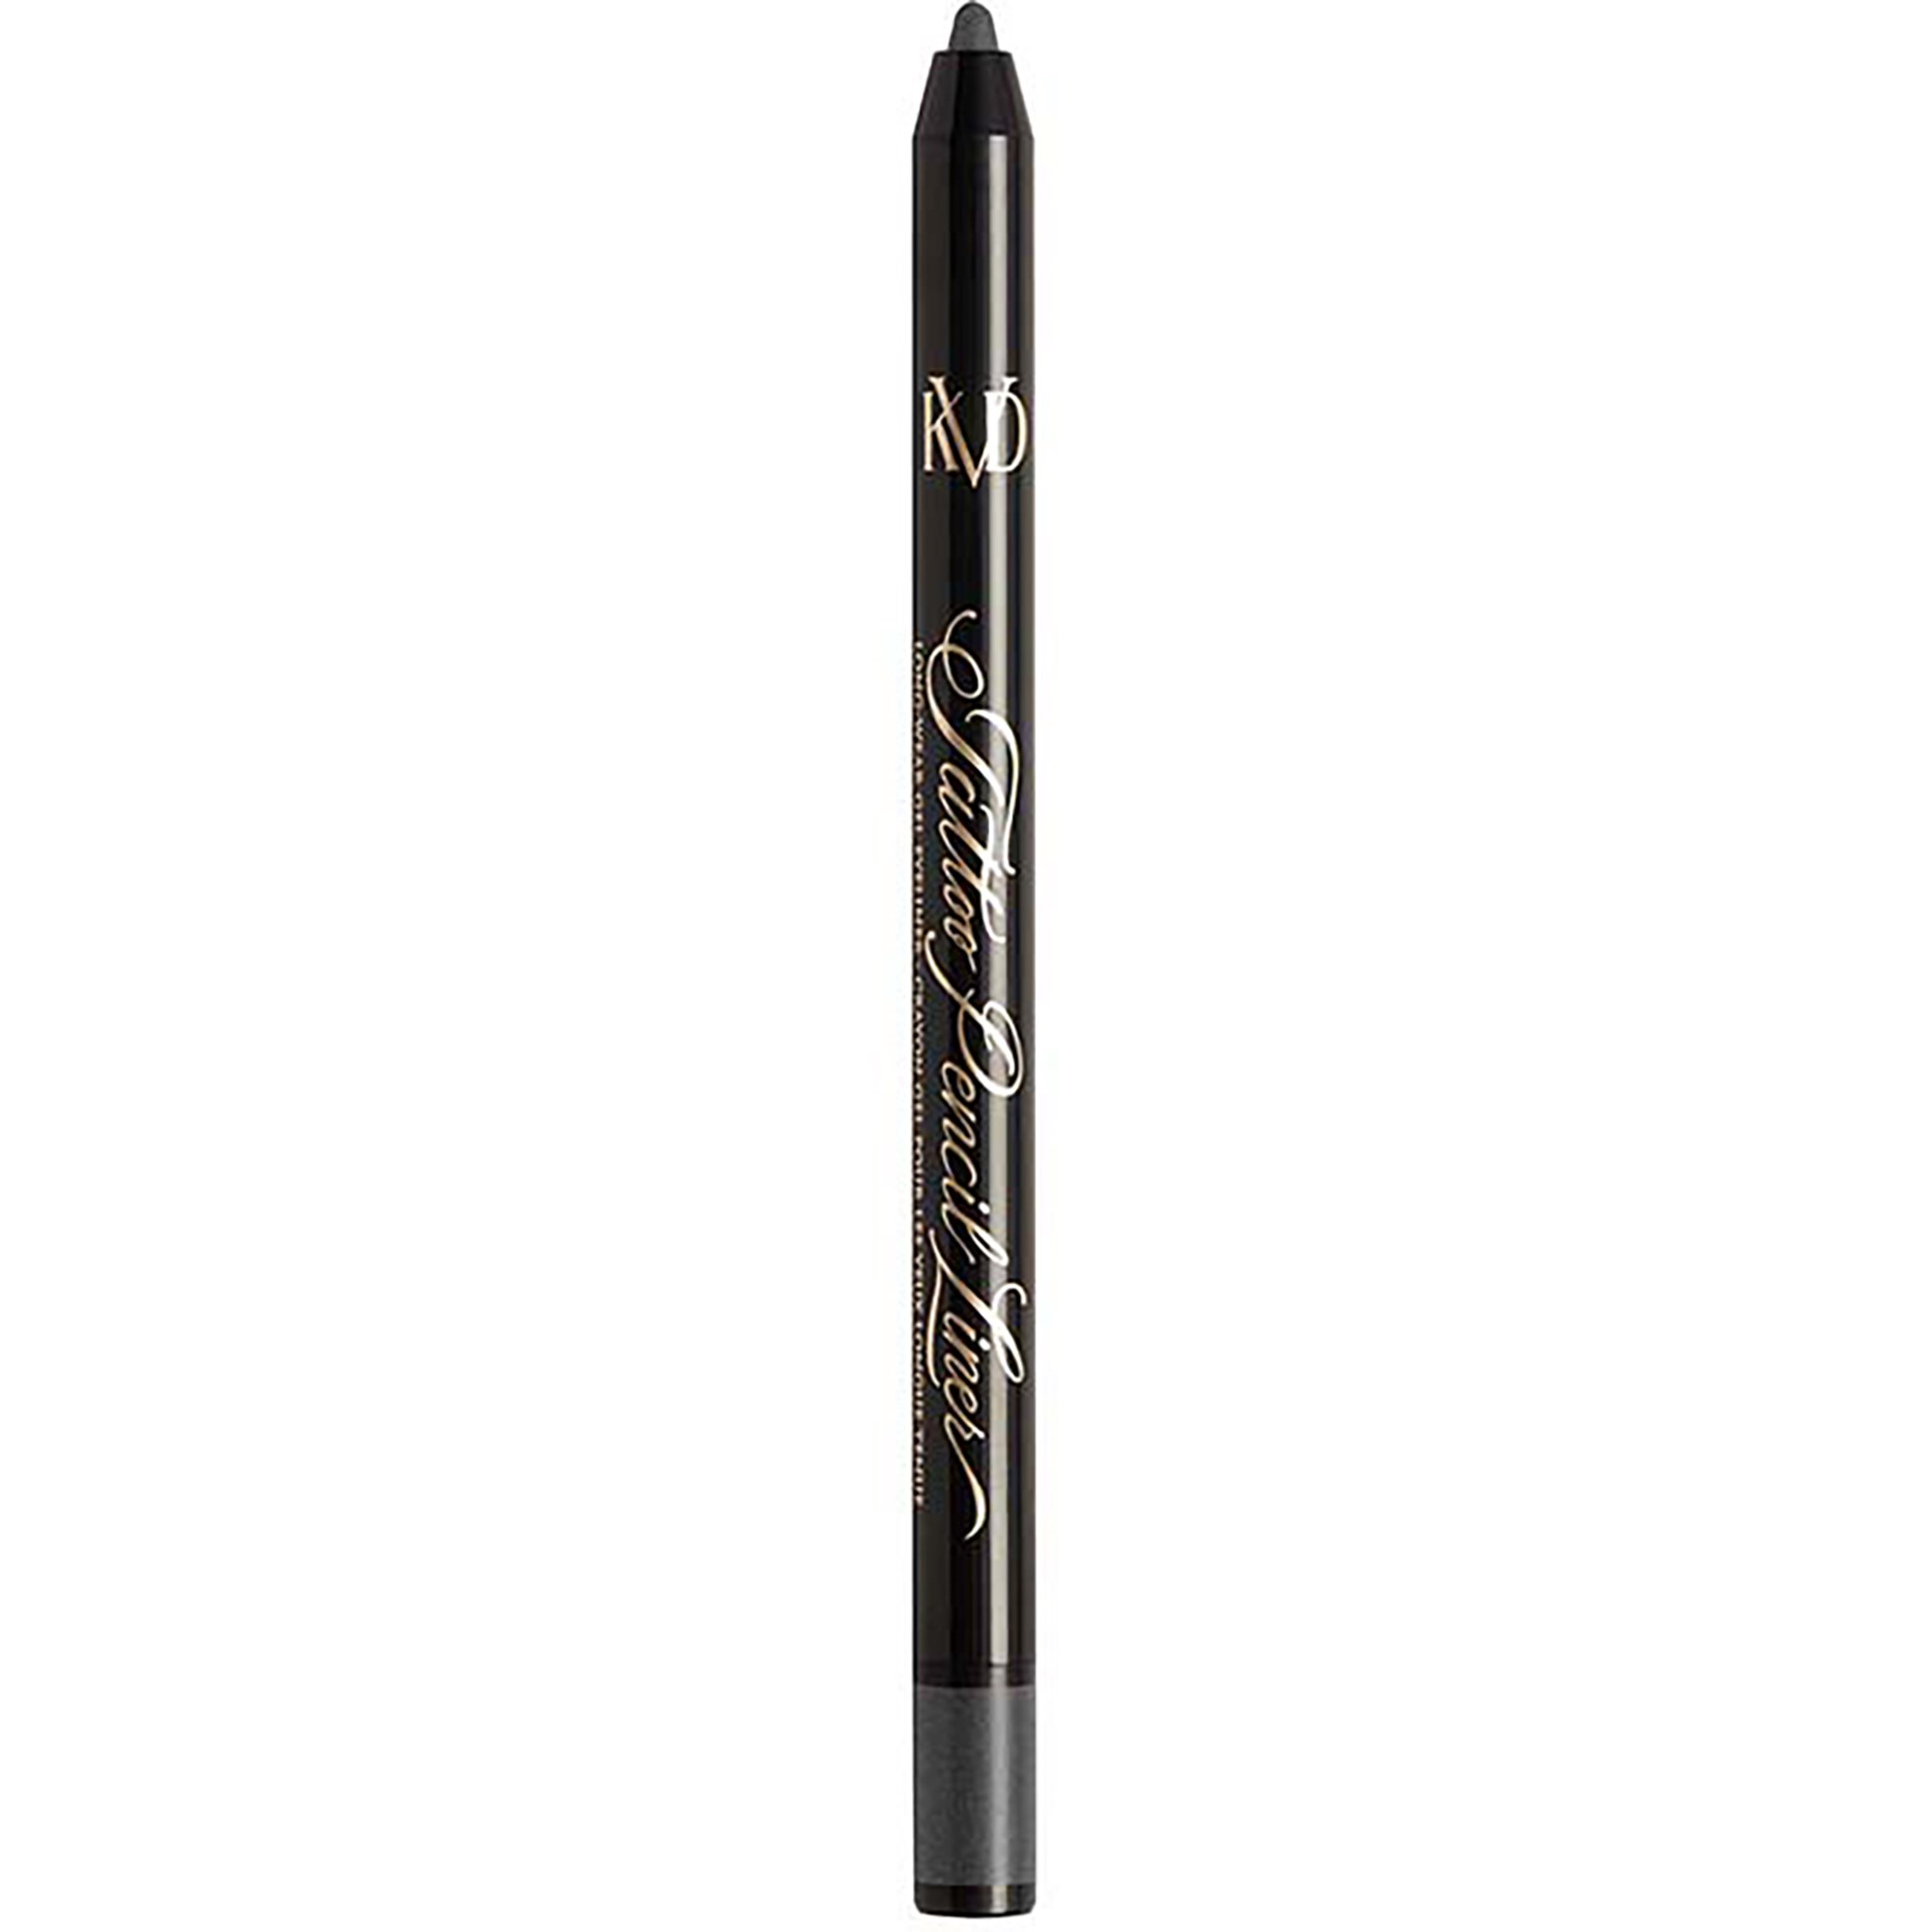 KVD Beauty Tatoo Pencil Liner Chromite Black